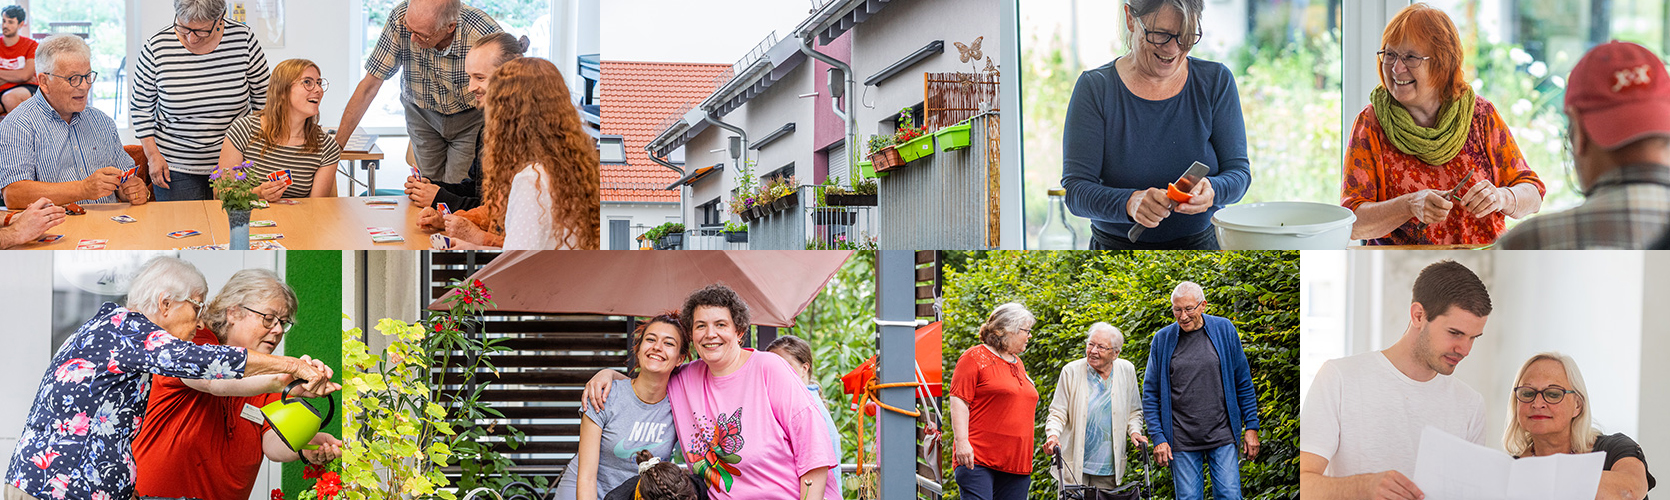 Collage an Bildern von Personen in verschiedenen Wohnsituationen in einer Wohngemeinschaft